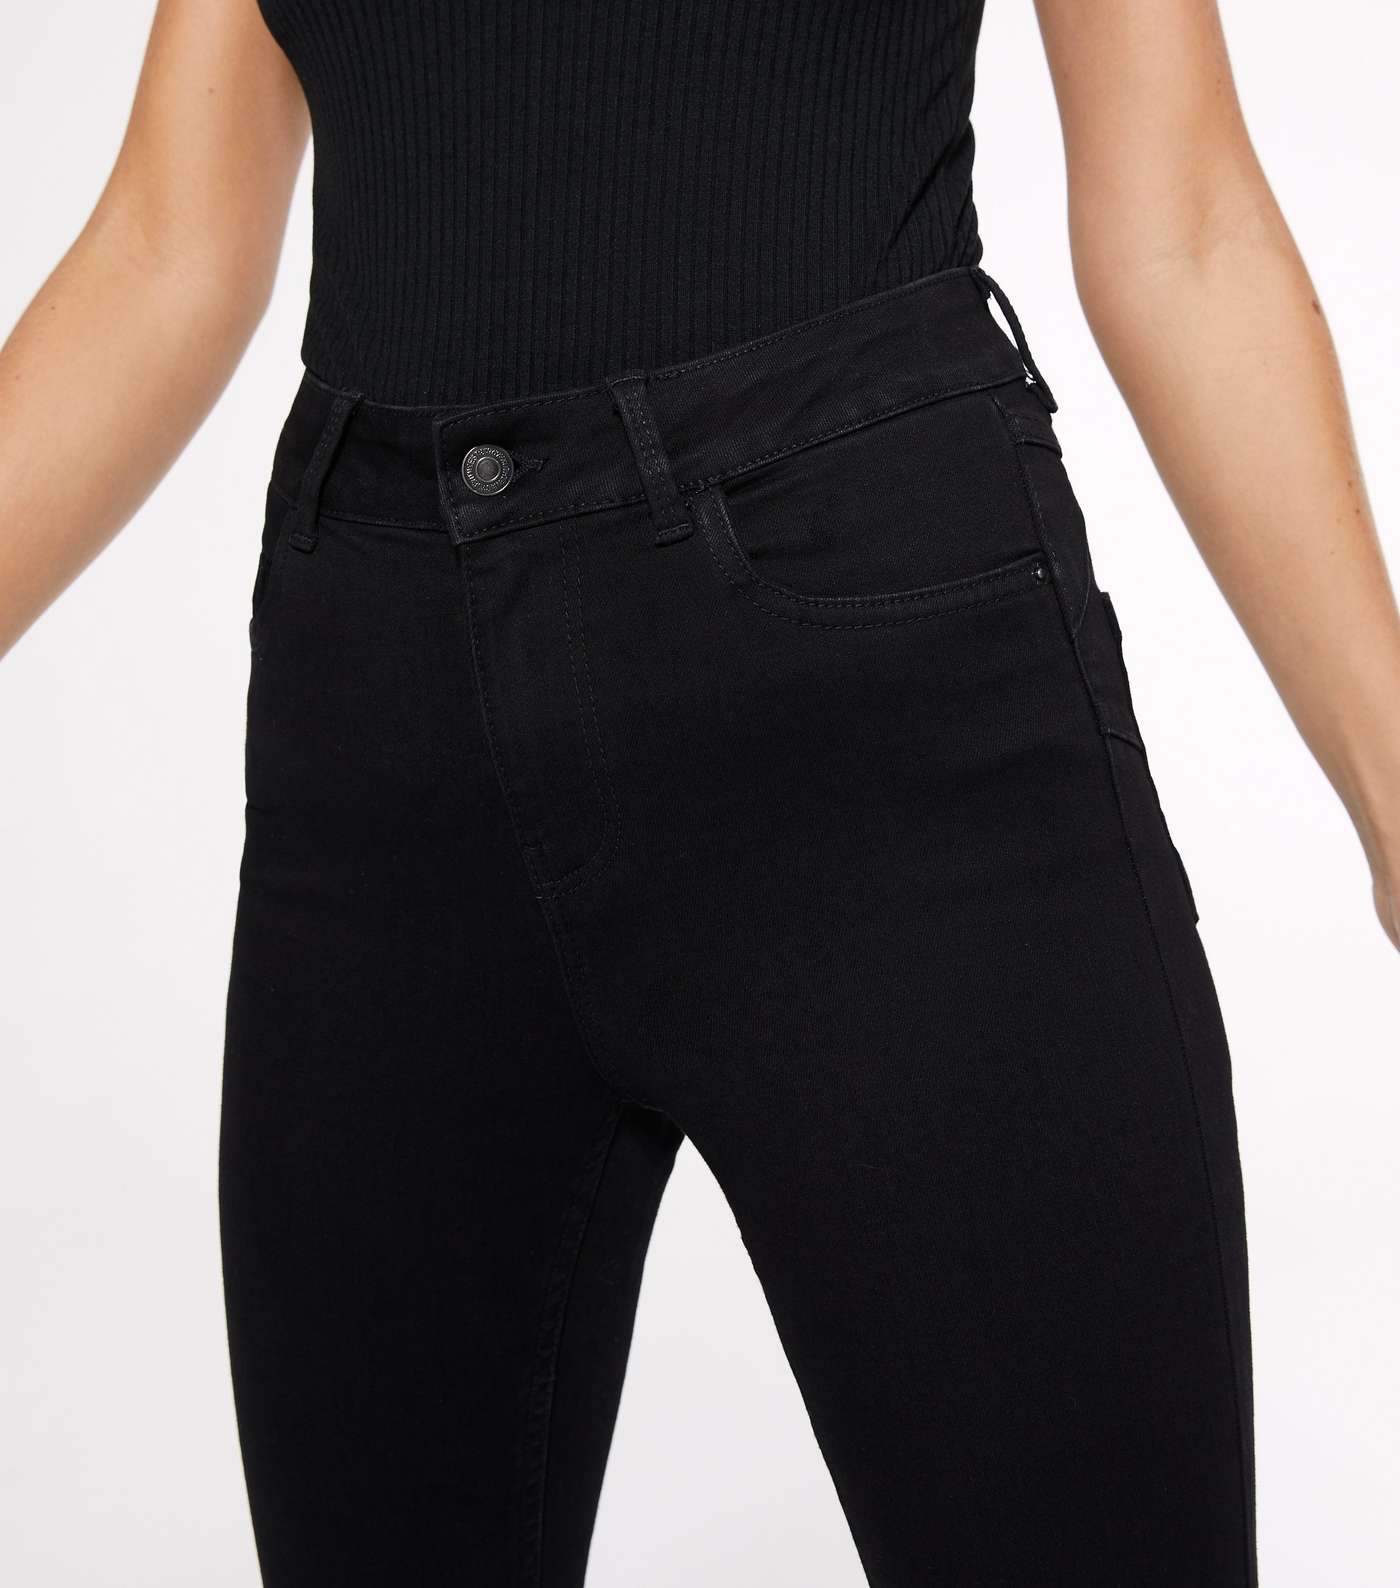 Petite Black Lift & Shape Jenna Skinny Jeans Image 3